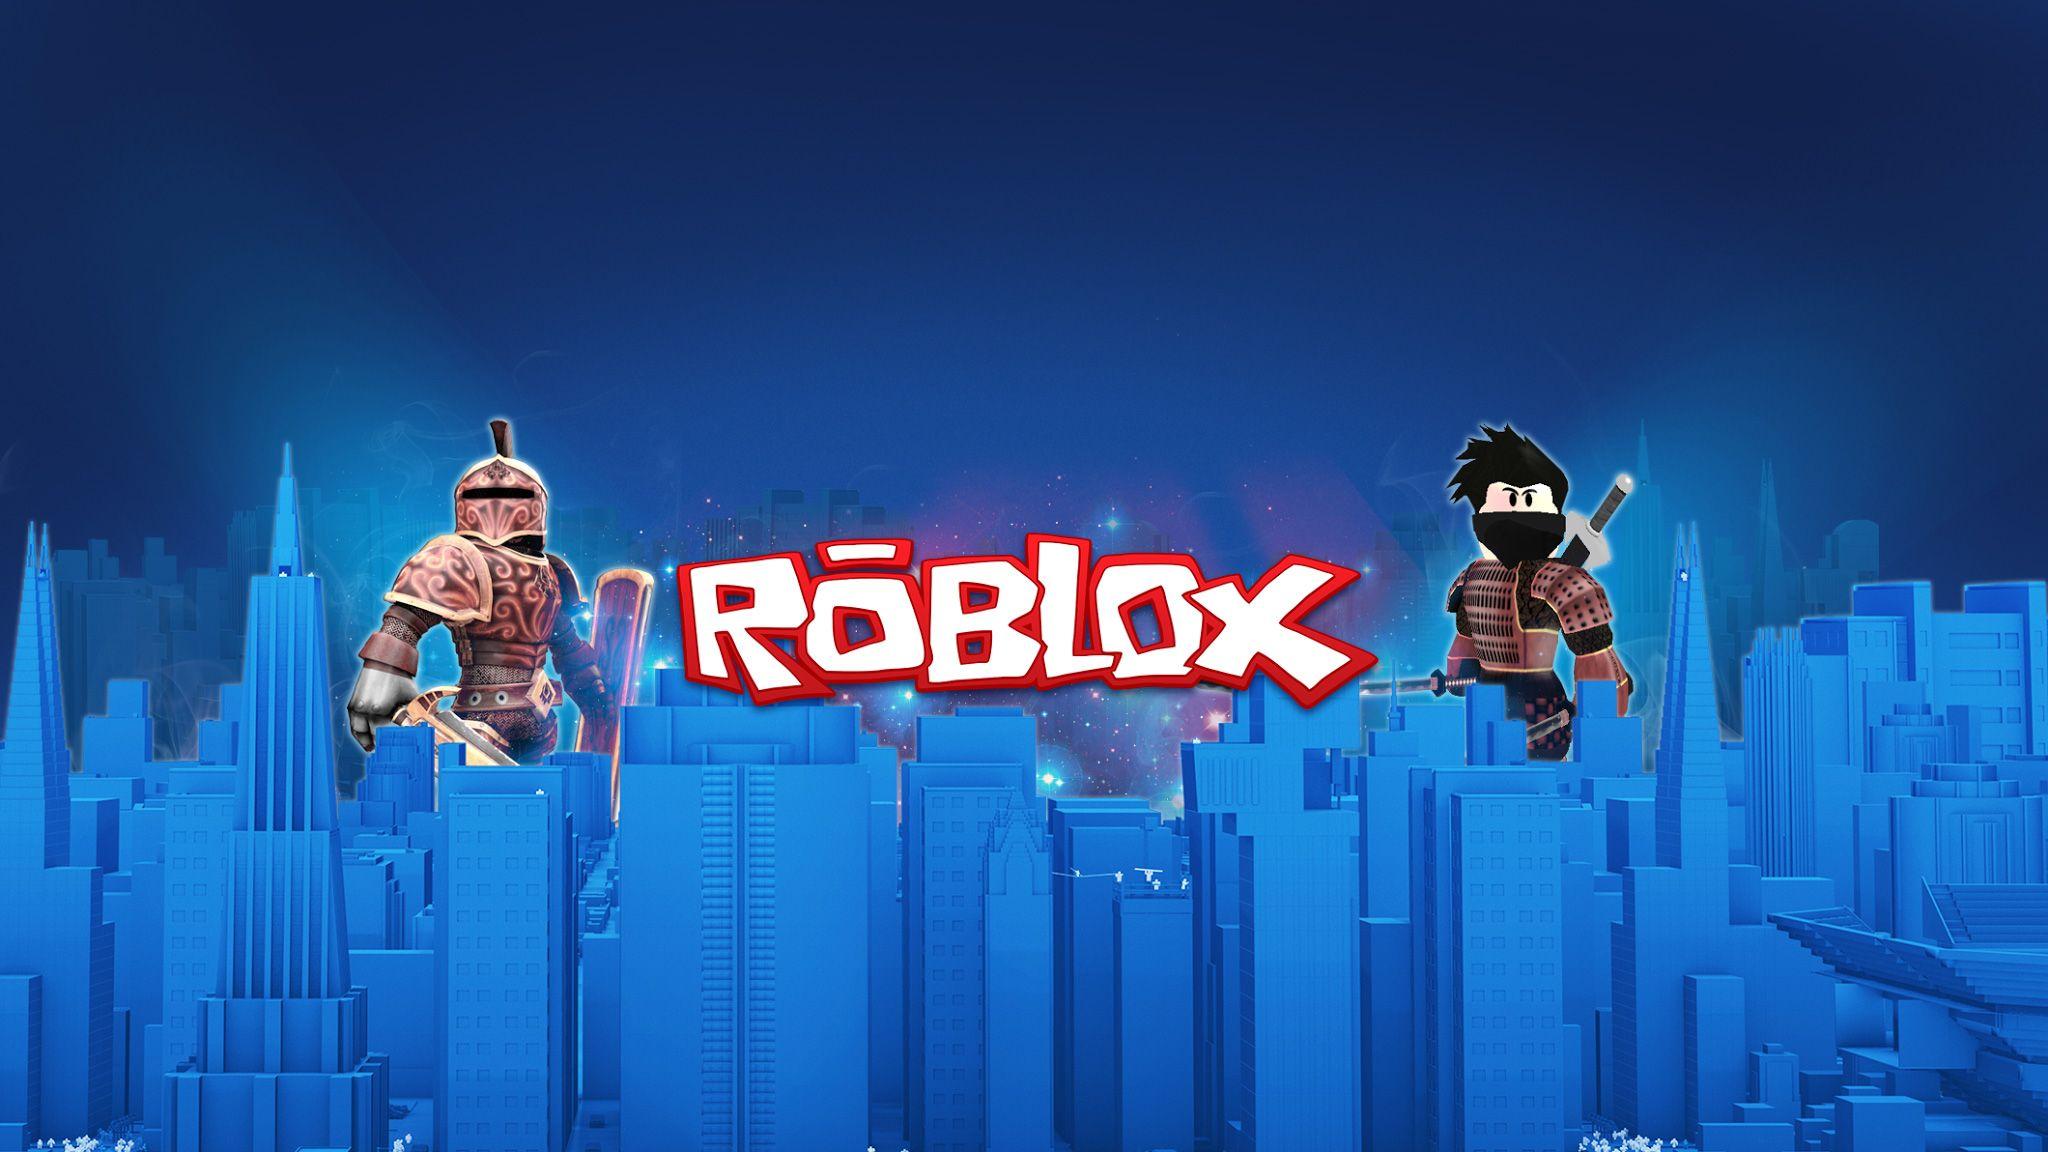 Roblox çöktü mü? Roblox neden açılmıyor? Roblox giriş sorunu hakkında -  Teknoloji Haberleri